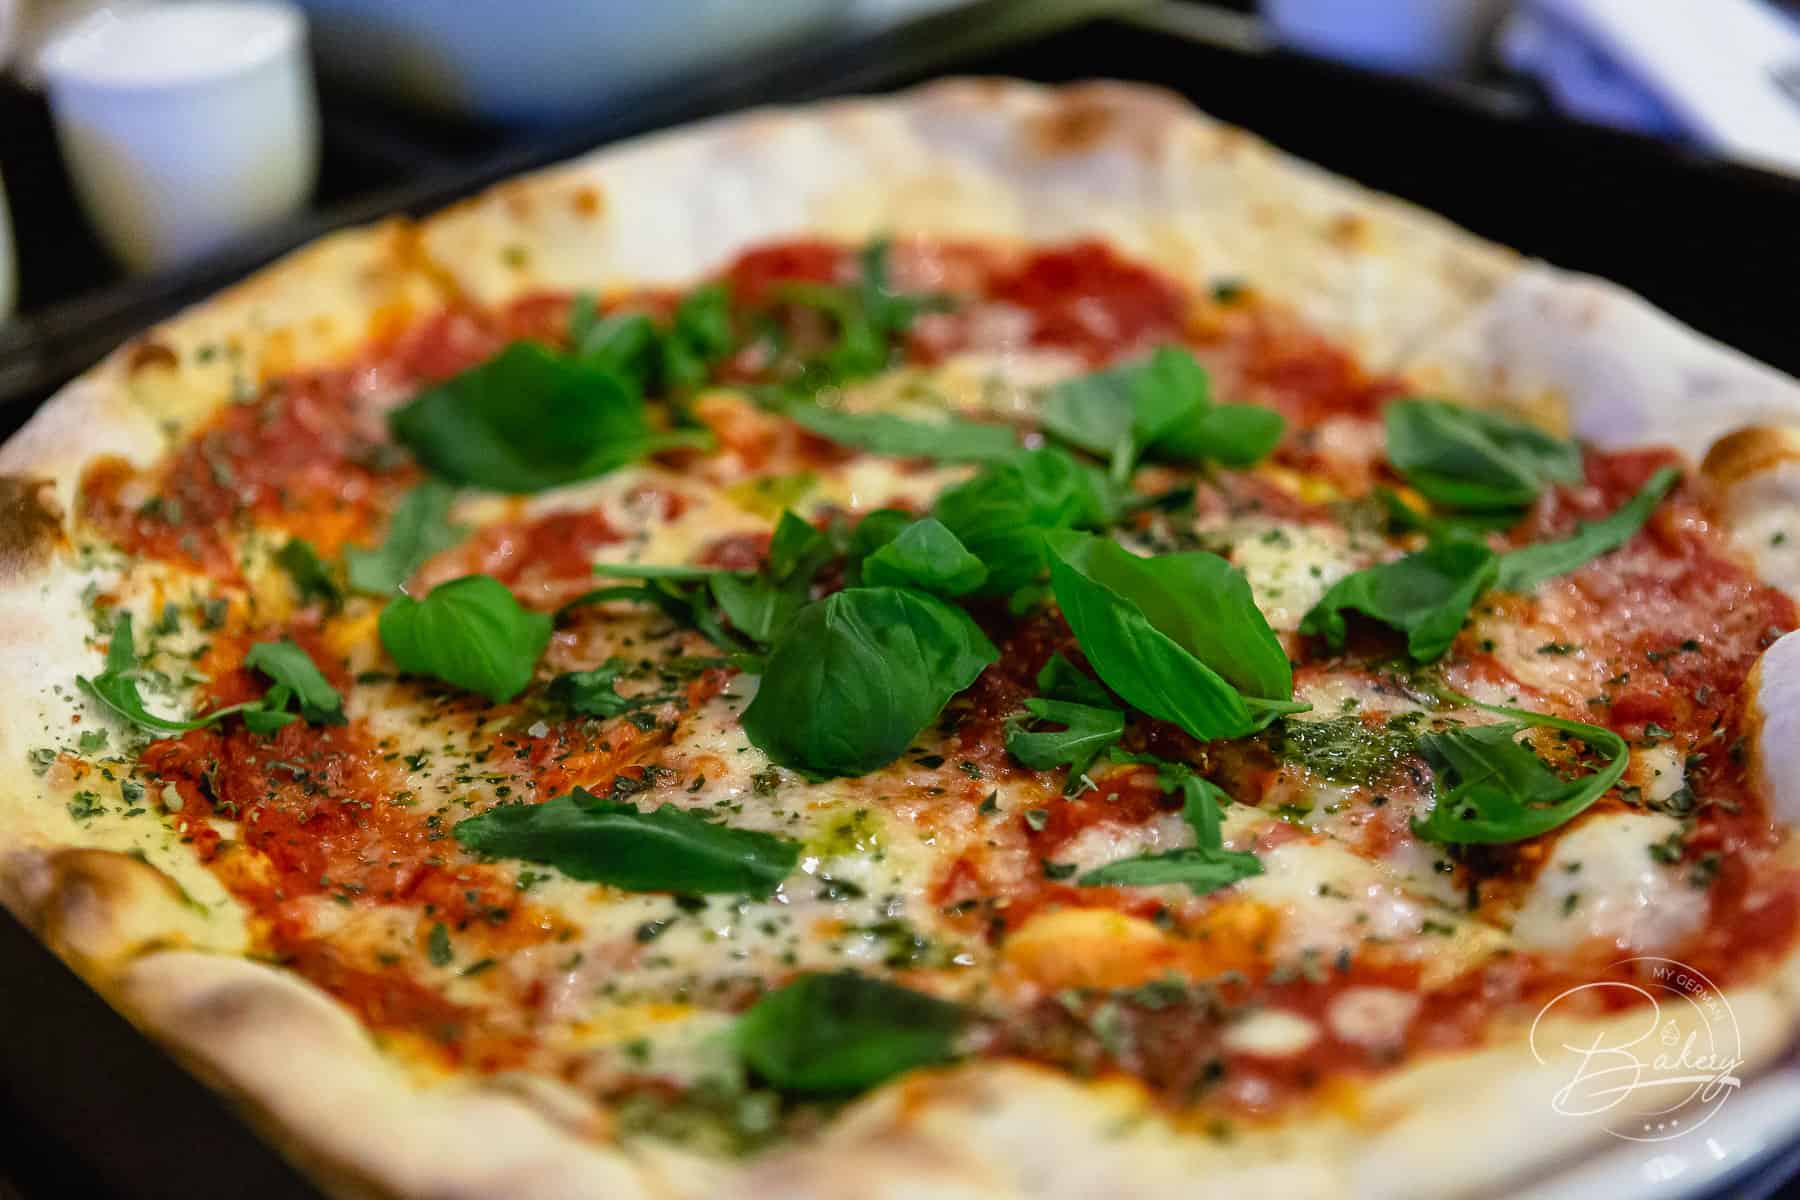 Pizzateig Grundrezept - bester Pizzateig selber machen - Pizza backen - Pizzateig selber machen - einfaches Rezept für Pizzateig